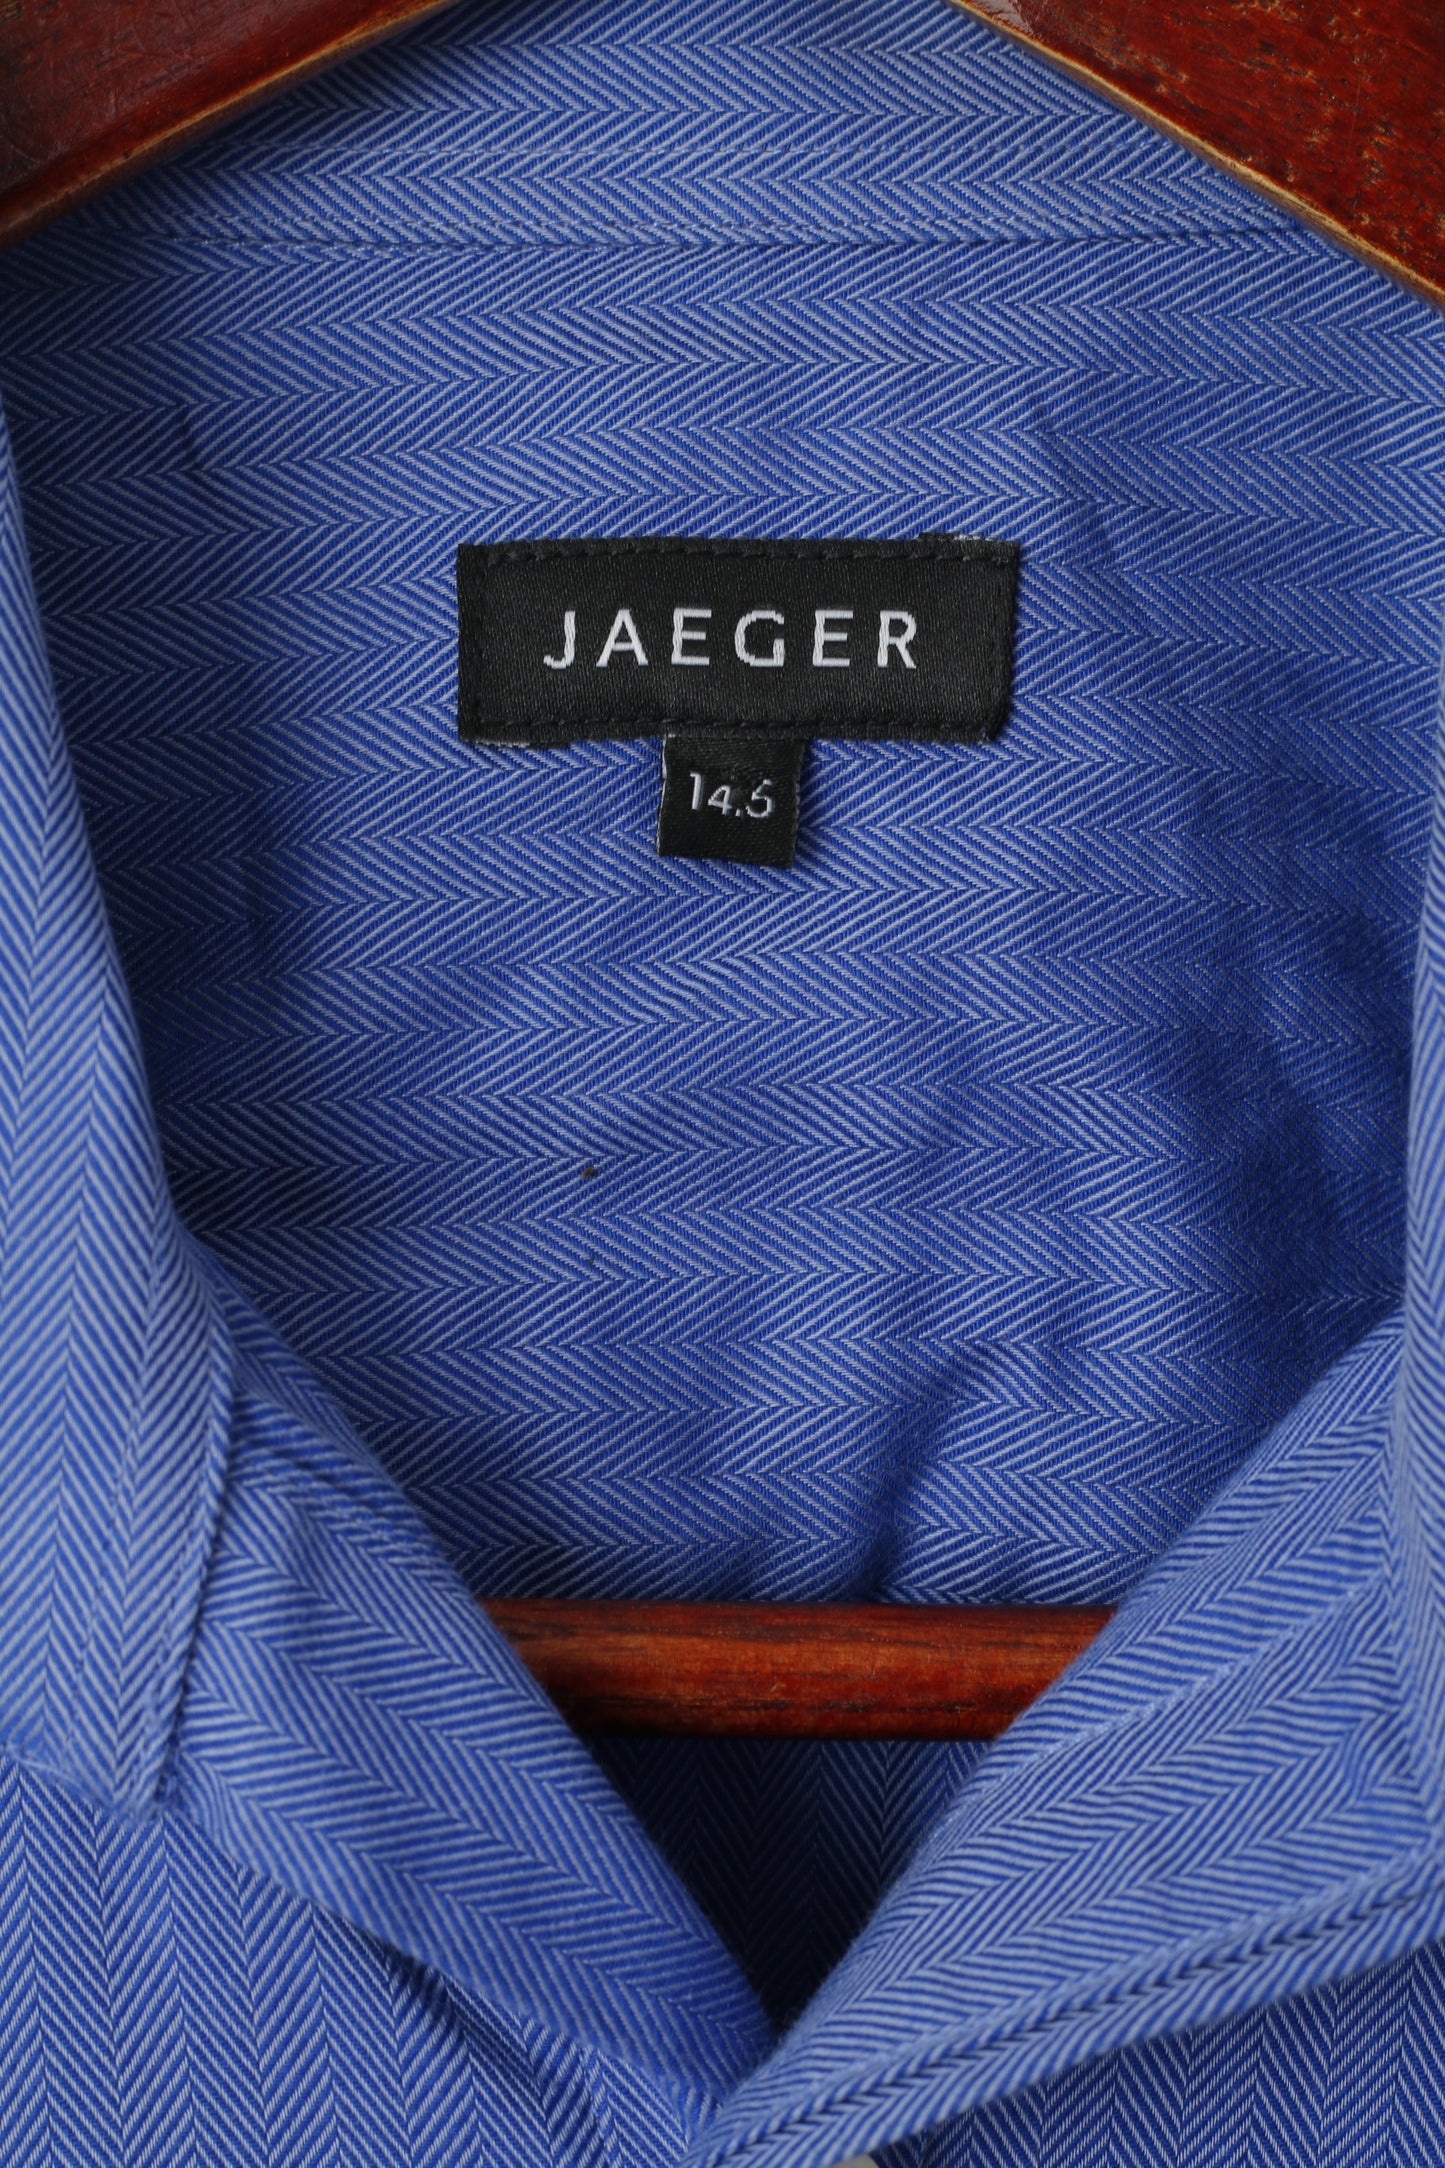 Jaeger Hommes 14.5 S Chemise décontractée Bleu Rayé Coton Boutons de manchette à manches longues Haut élégant